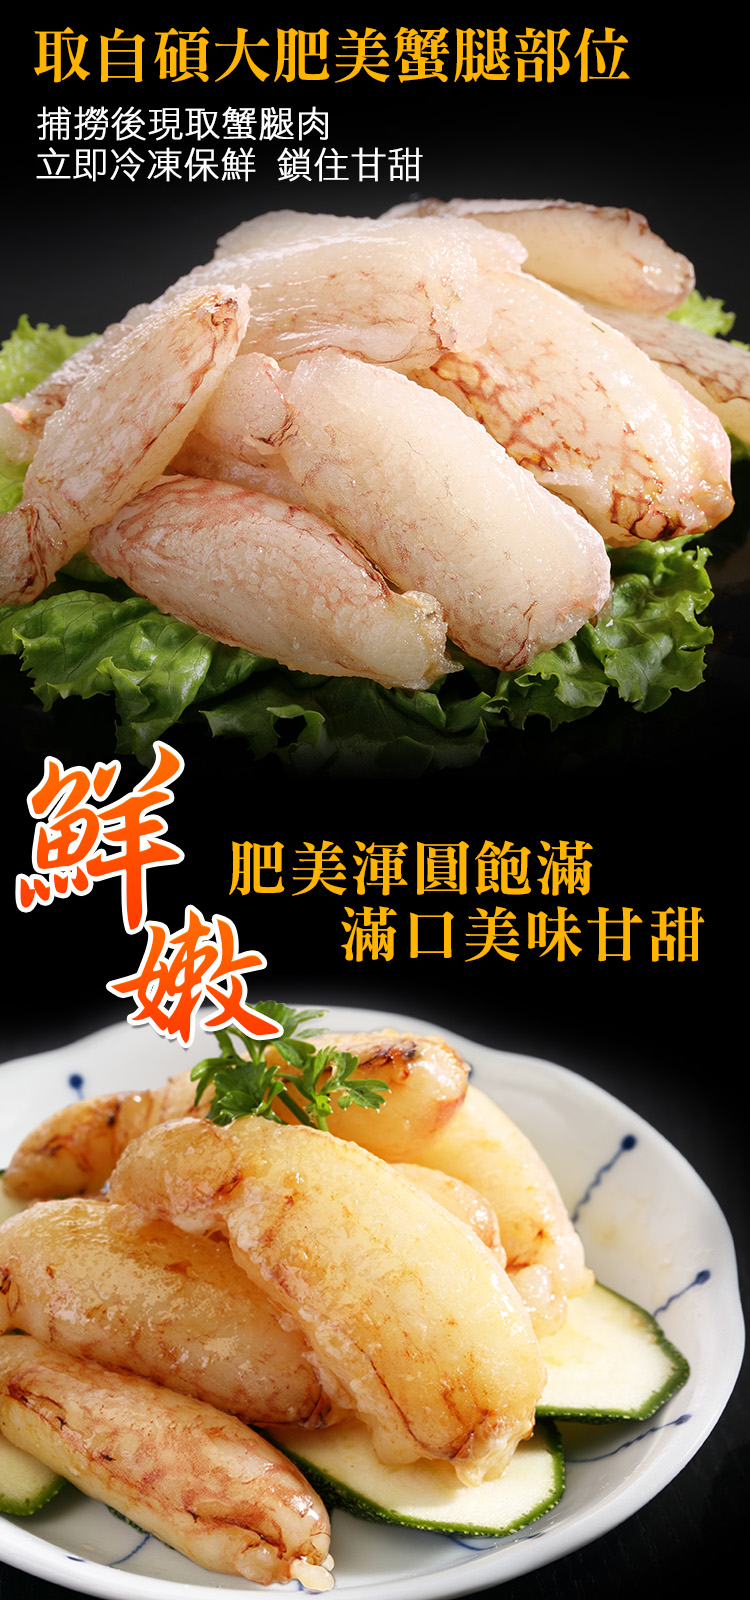 【海鮮王】極鮮肥美蟳管肉 6盒組(130g±10%/盒)